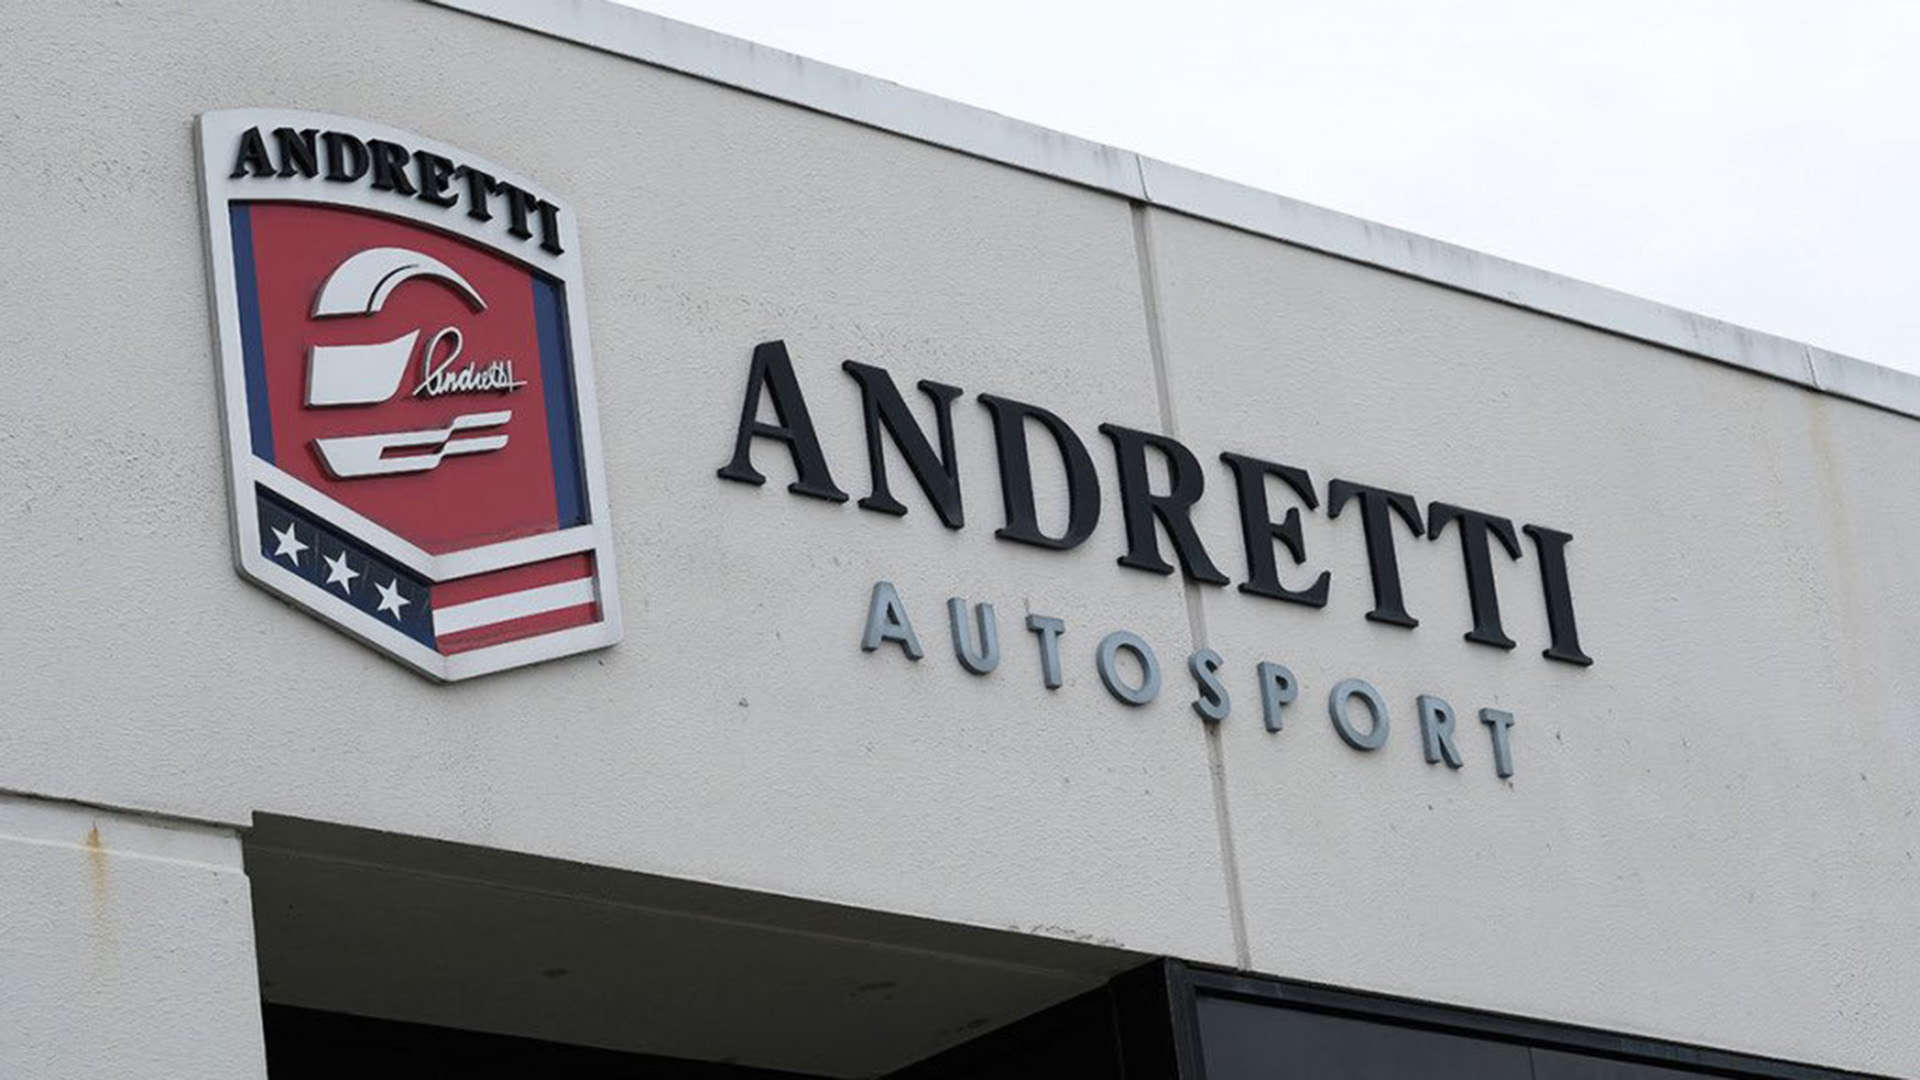 Andretti F1 